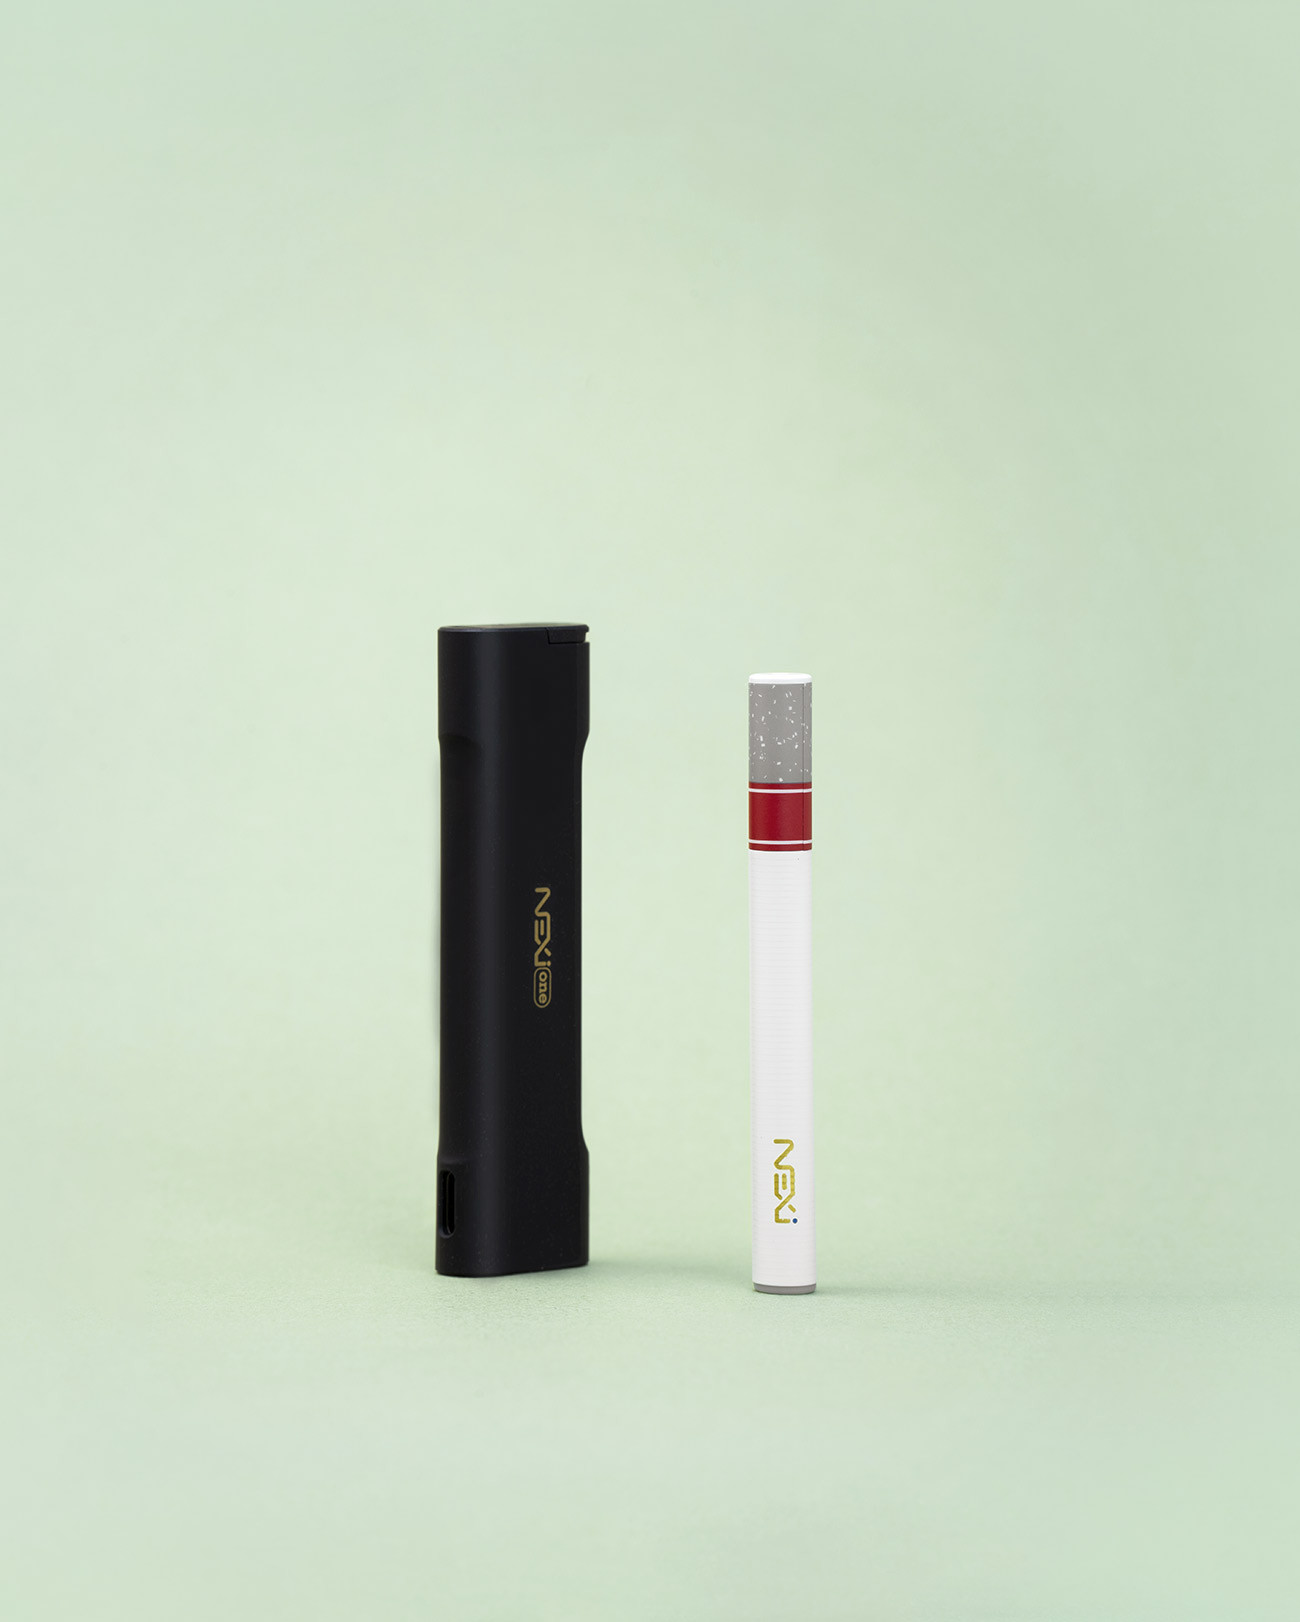 Le kit Aspire Nexi One, une cigarette électronique révolutionnaire